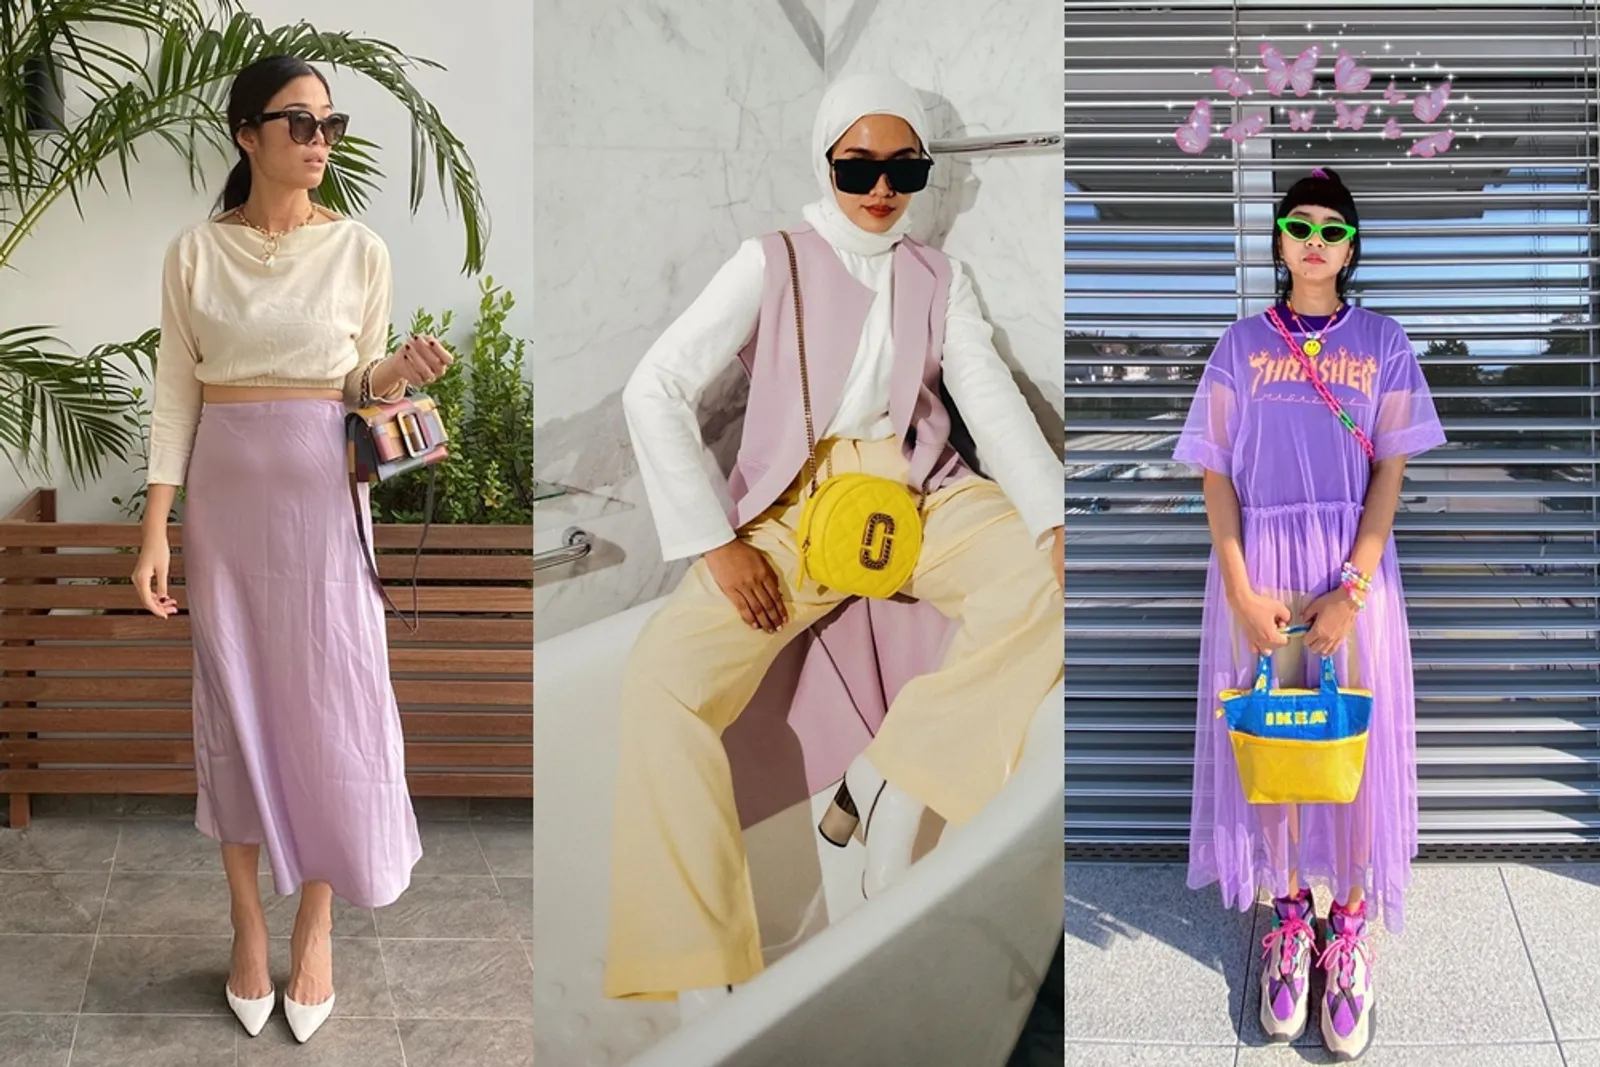 Mudah Ditiru, Ini Gaya Selebgram Indonesia Pakai Outfit Warna Lilac